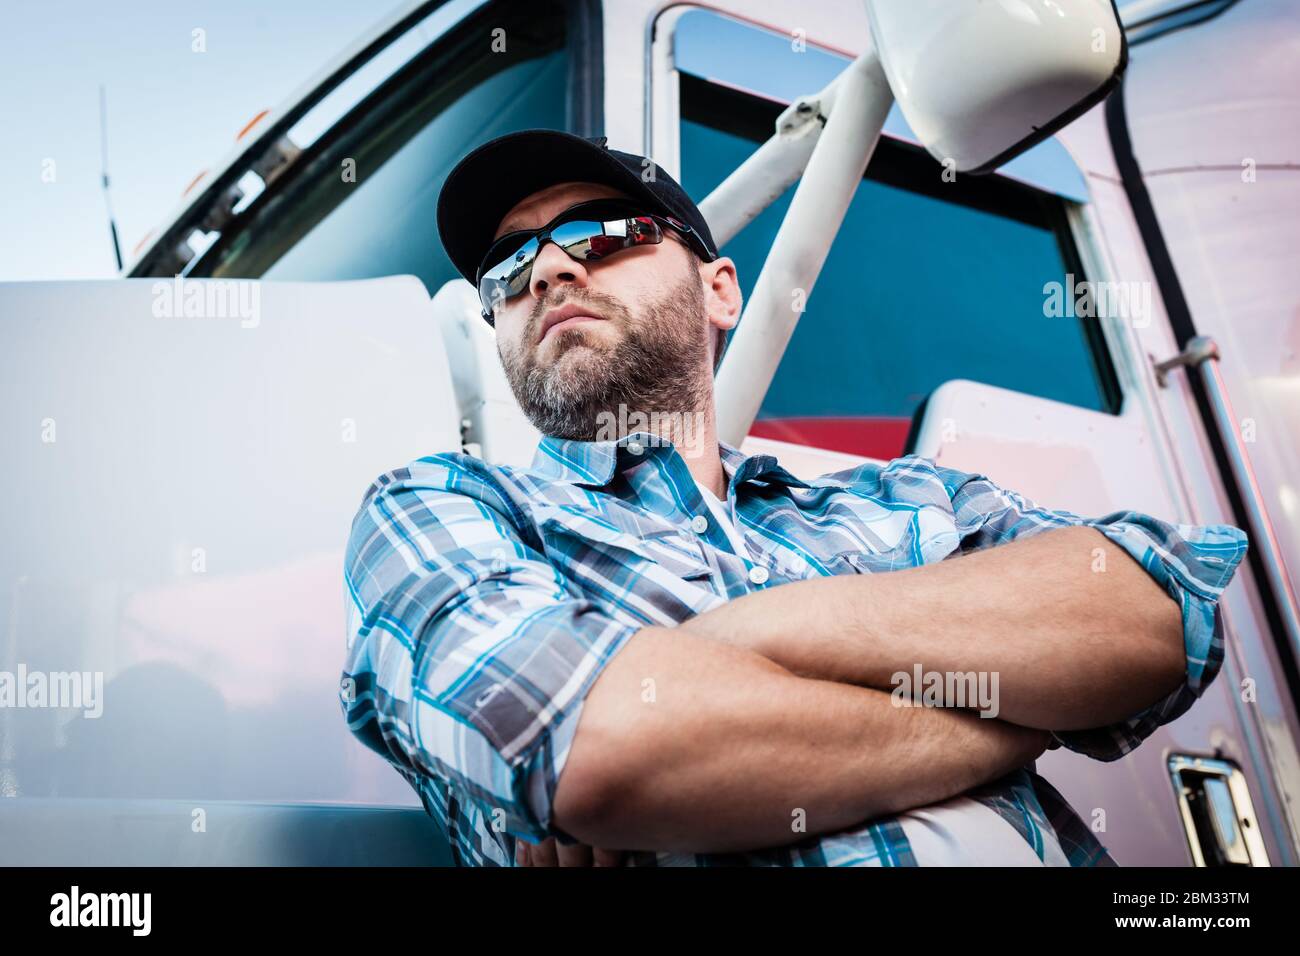 Zuversichtlich kaukasischen männlichen amerikanischen Trucker neben seinem großen Rig. Konzept der LKW-Besitzer Betreiber mit Mann in karierten Hemd und Baseball-Cap. Stockfoto